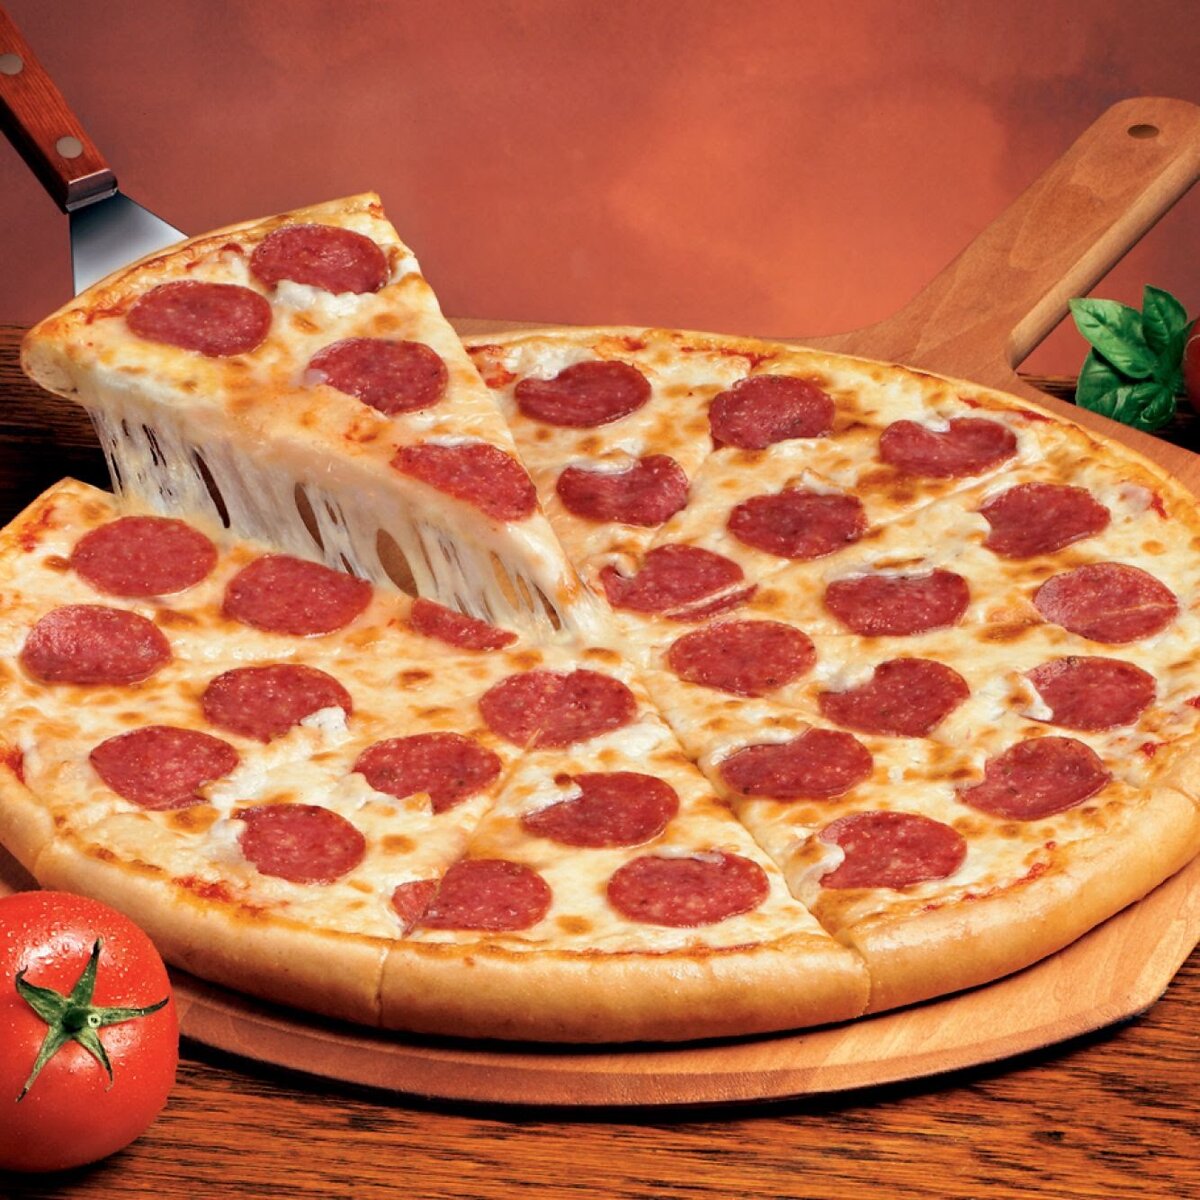 какую колбасу нужно для пиццы пепперони в домашних условиях фото 87